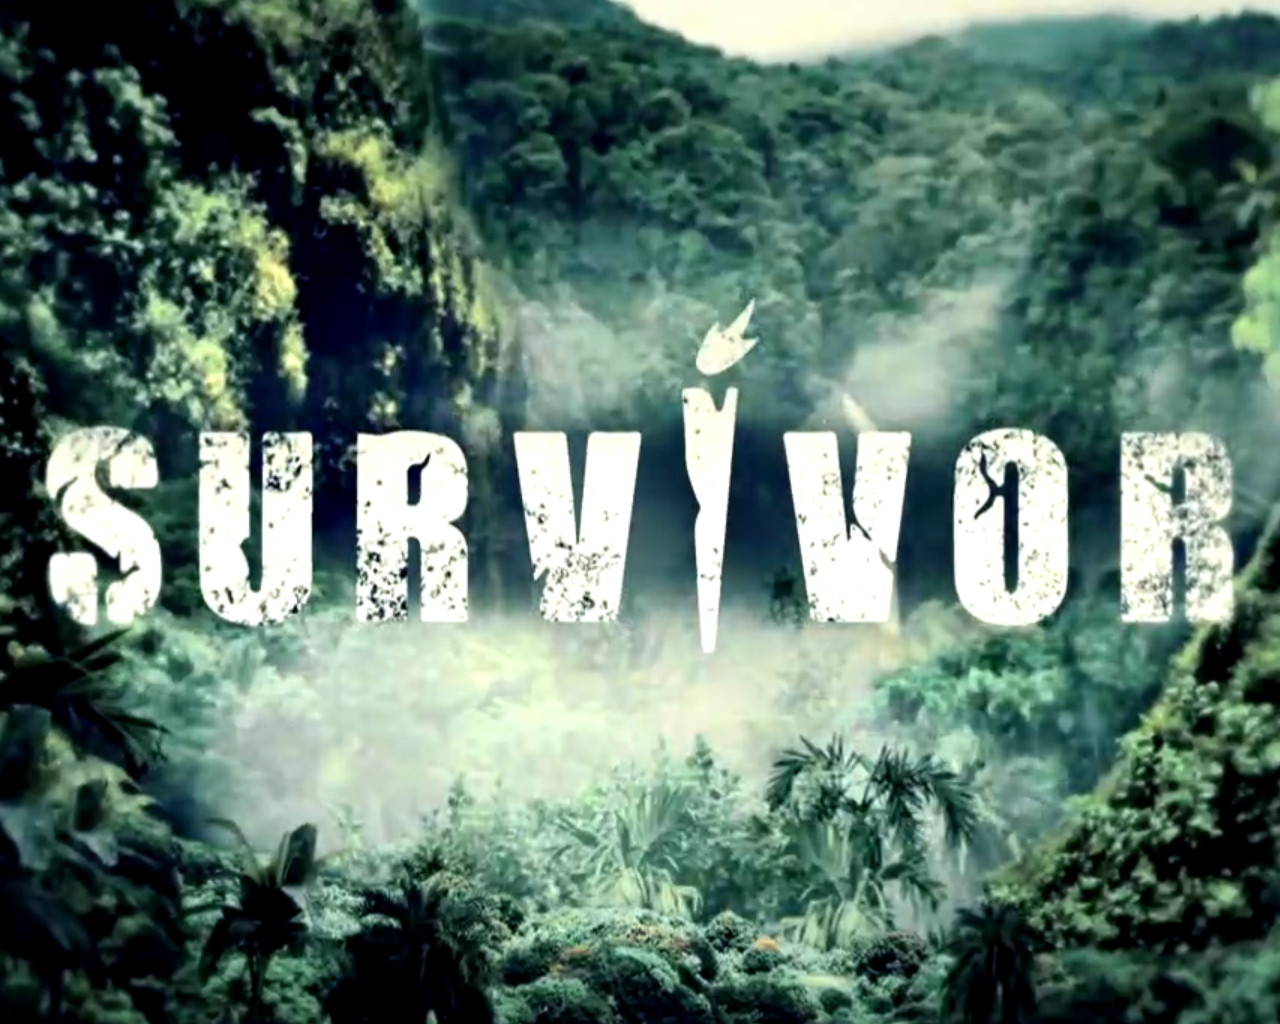 survivor 4, survivor 4 ασυλία,survivor 4 spoiler,survivor 4 skai,survivor 4 παίκτες,survivor 4 trailer,survivor 4 αποχωρηση,survivor 4 διασημοι,survivor 4 μαχητες,survivor 4 νέες προσθηκες,survivor 4 νεοι παικτες,survivor 4 κοκκινοι,survivor 4 μπλε,survivor spoiler,survivor trailer,survivor 2021,survivor greece